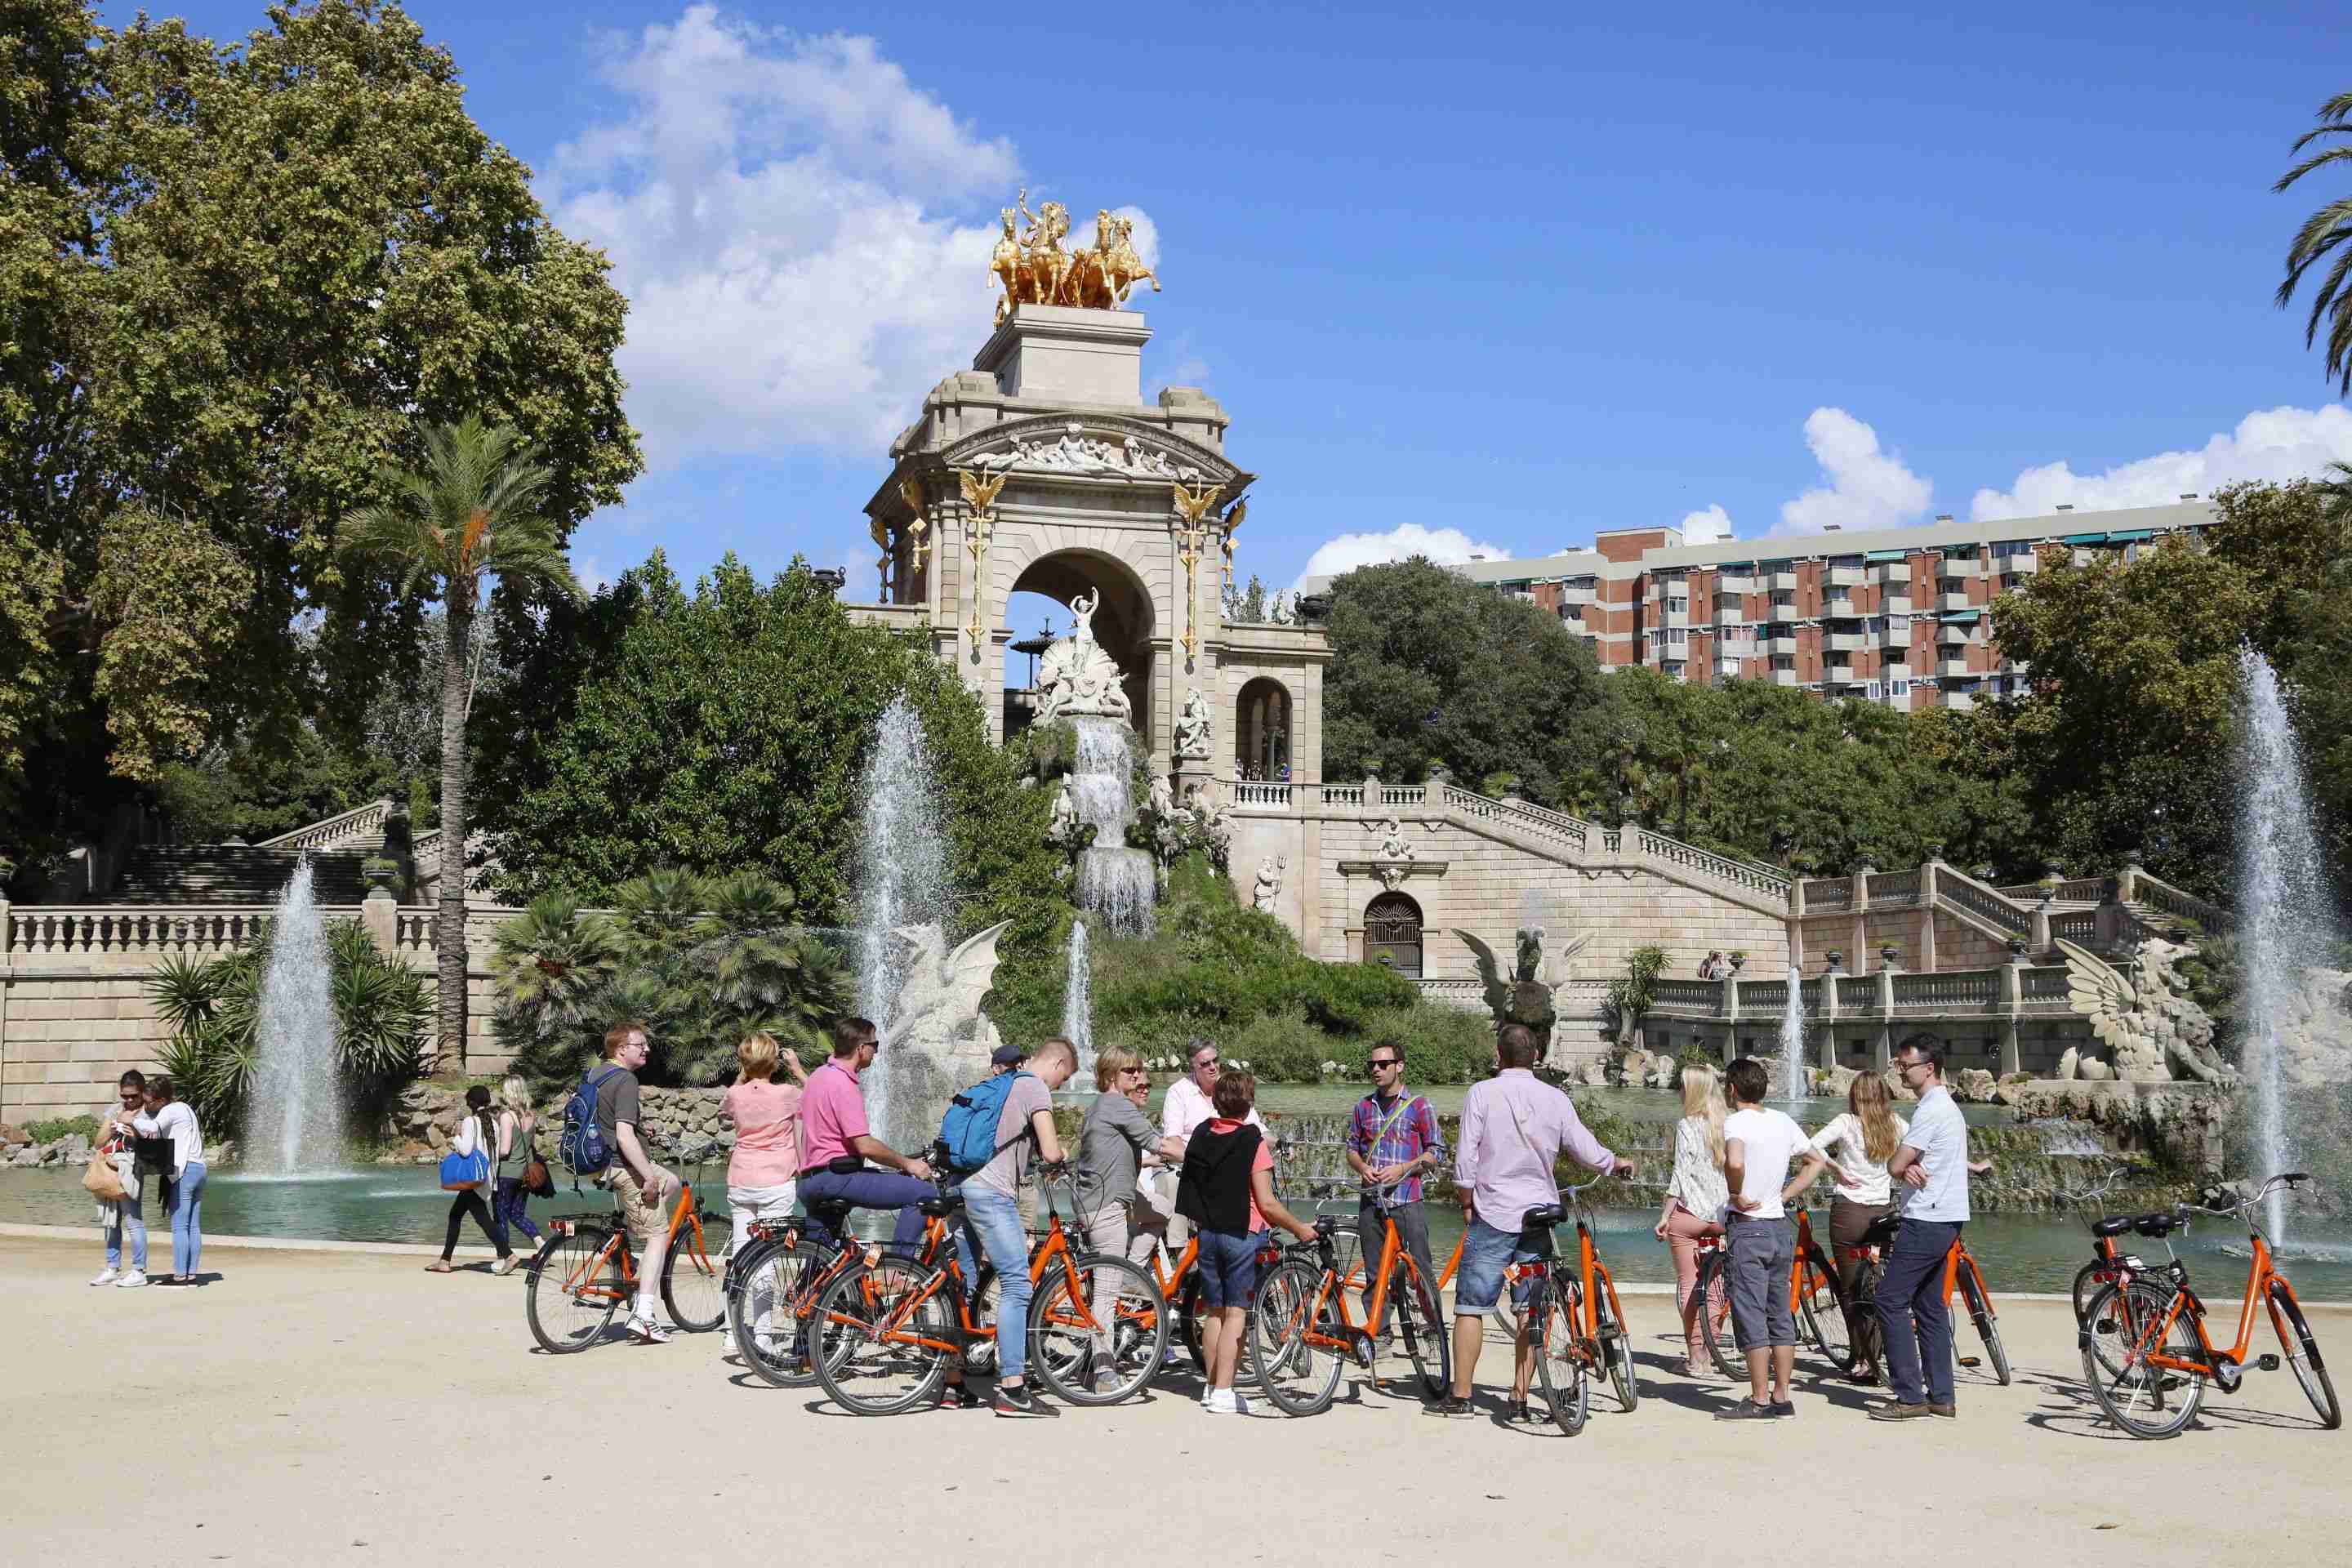 La turismofòbia pasa factura: La CNN desaconseja visitar Barcelona